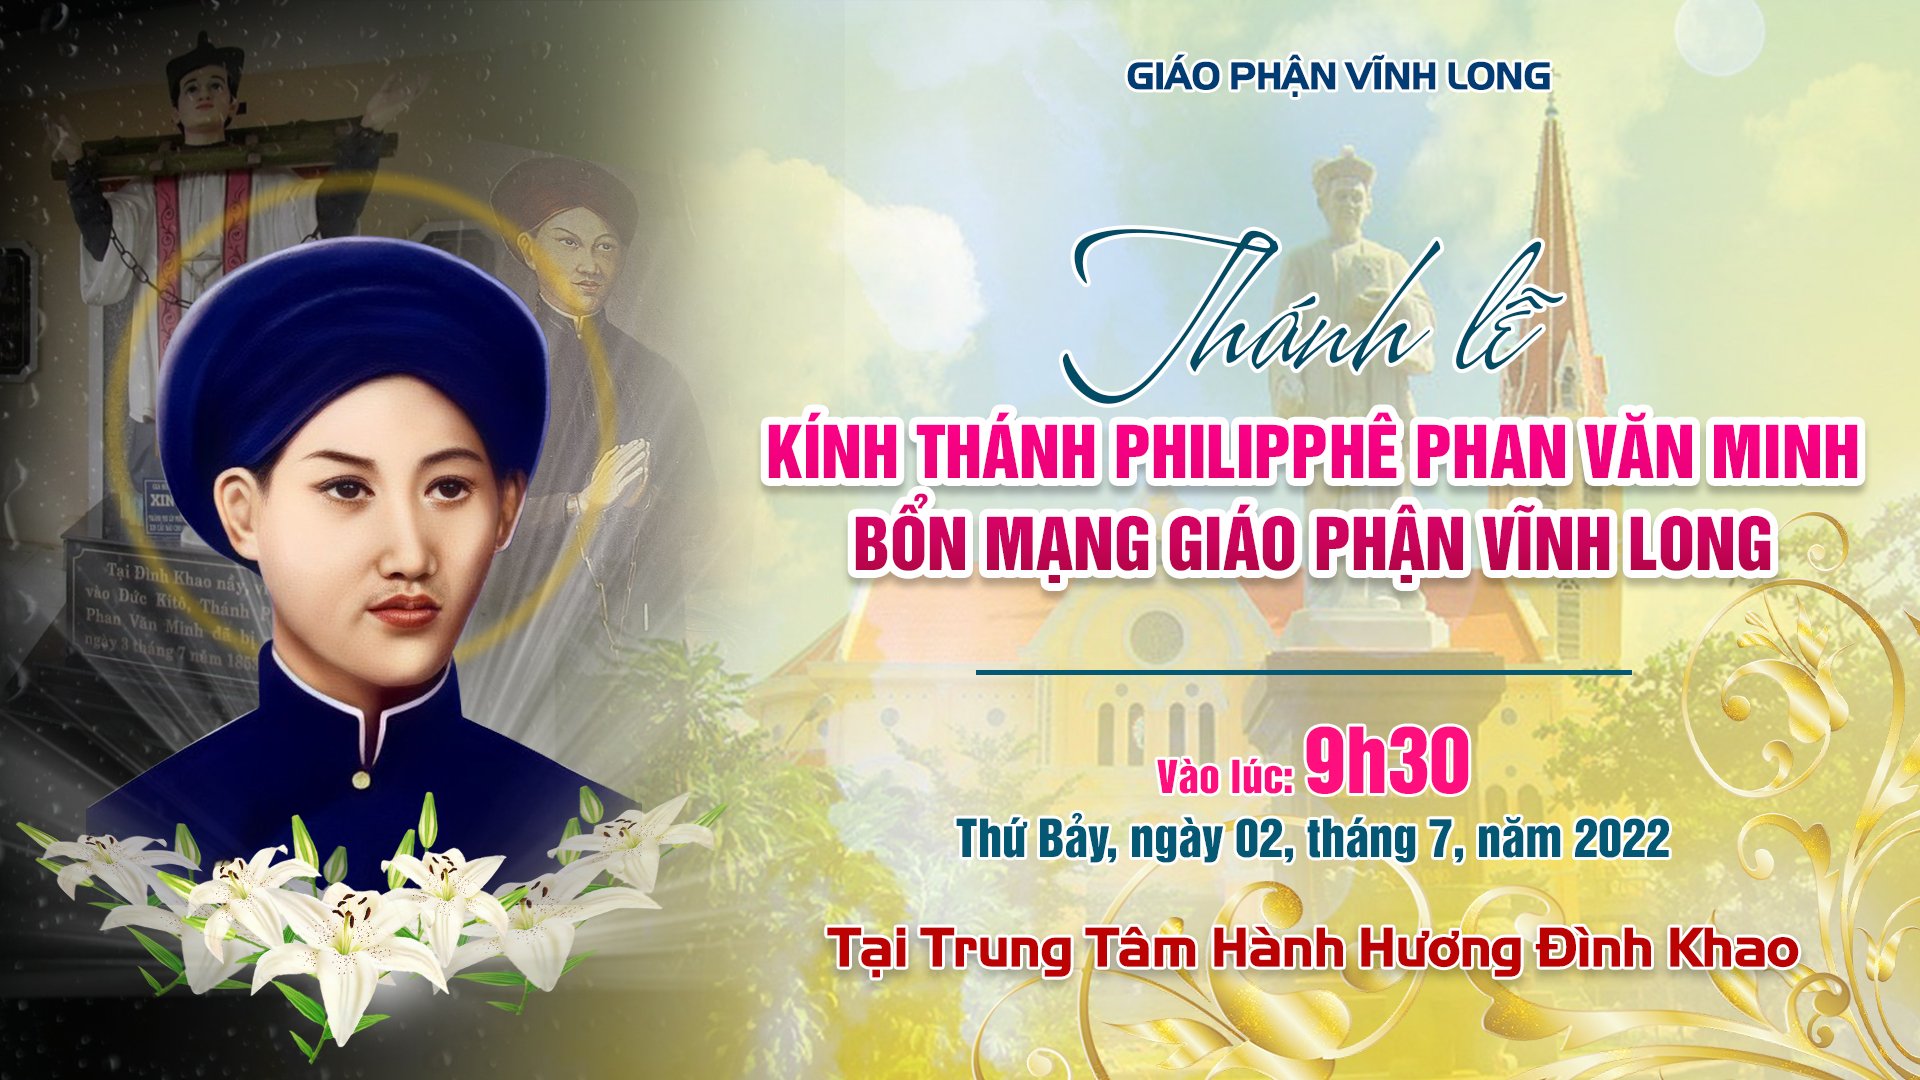 Trực tuyến: Thánh lễ kính thánh Philipphê Phan Văn Minh - Bổn Mạng Giáo Phận Vĩnh Long - 02.7.2022